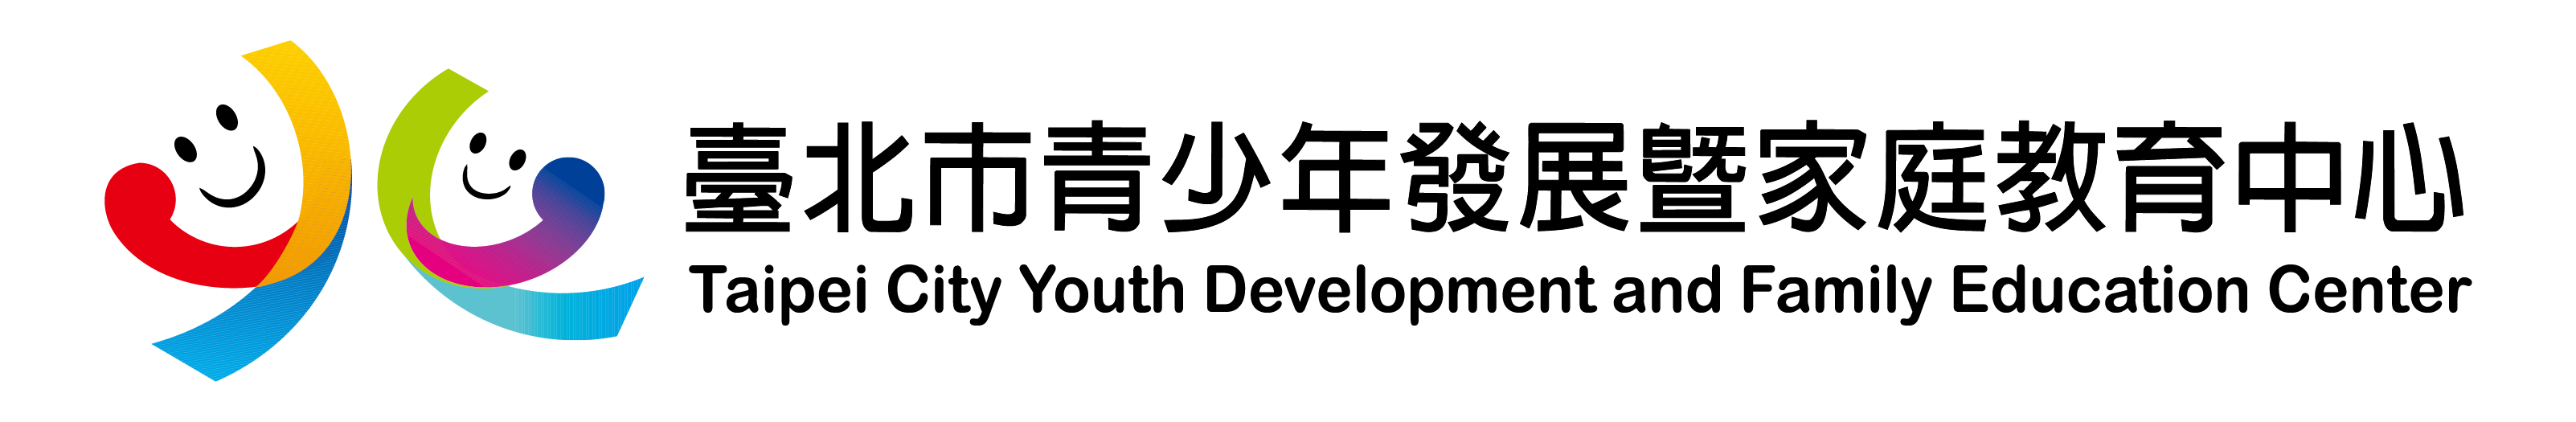 臺北市青少年發展處網路報名系統Logo